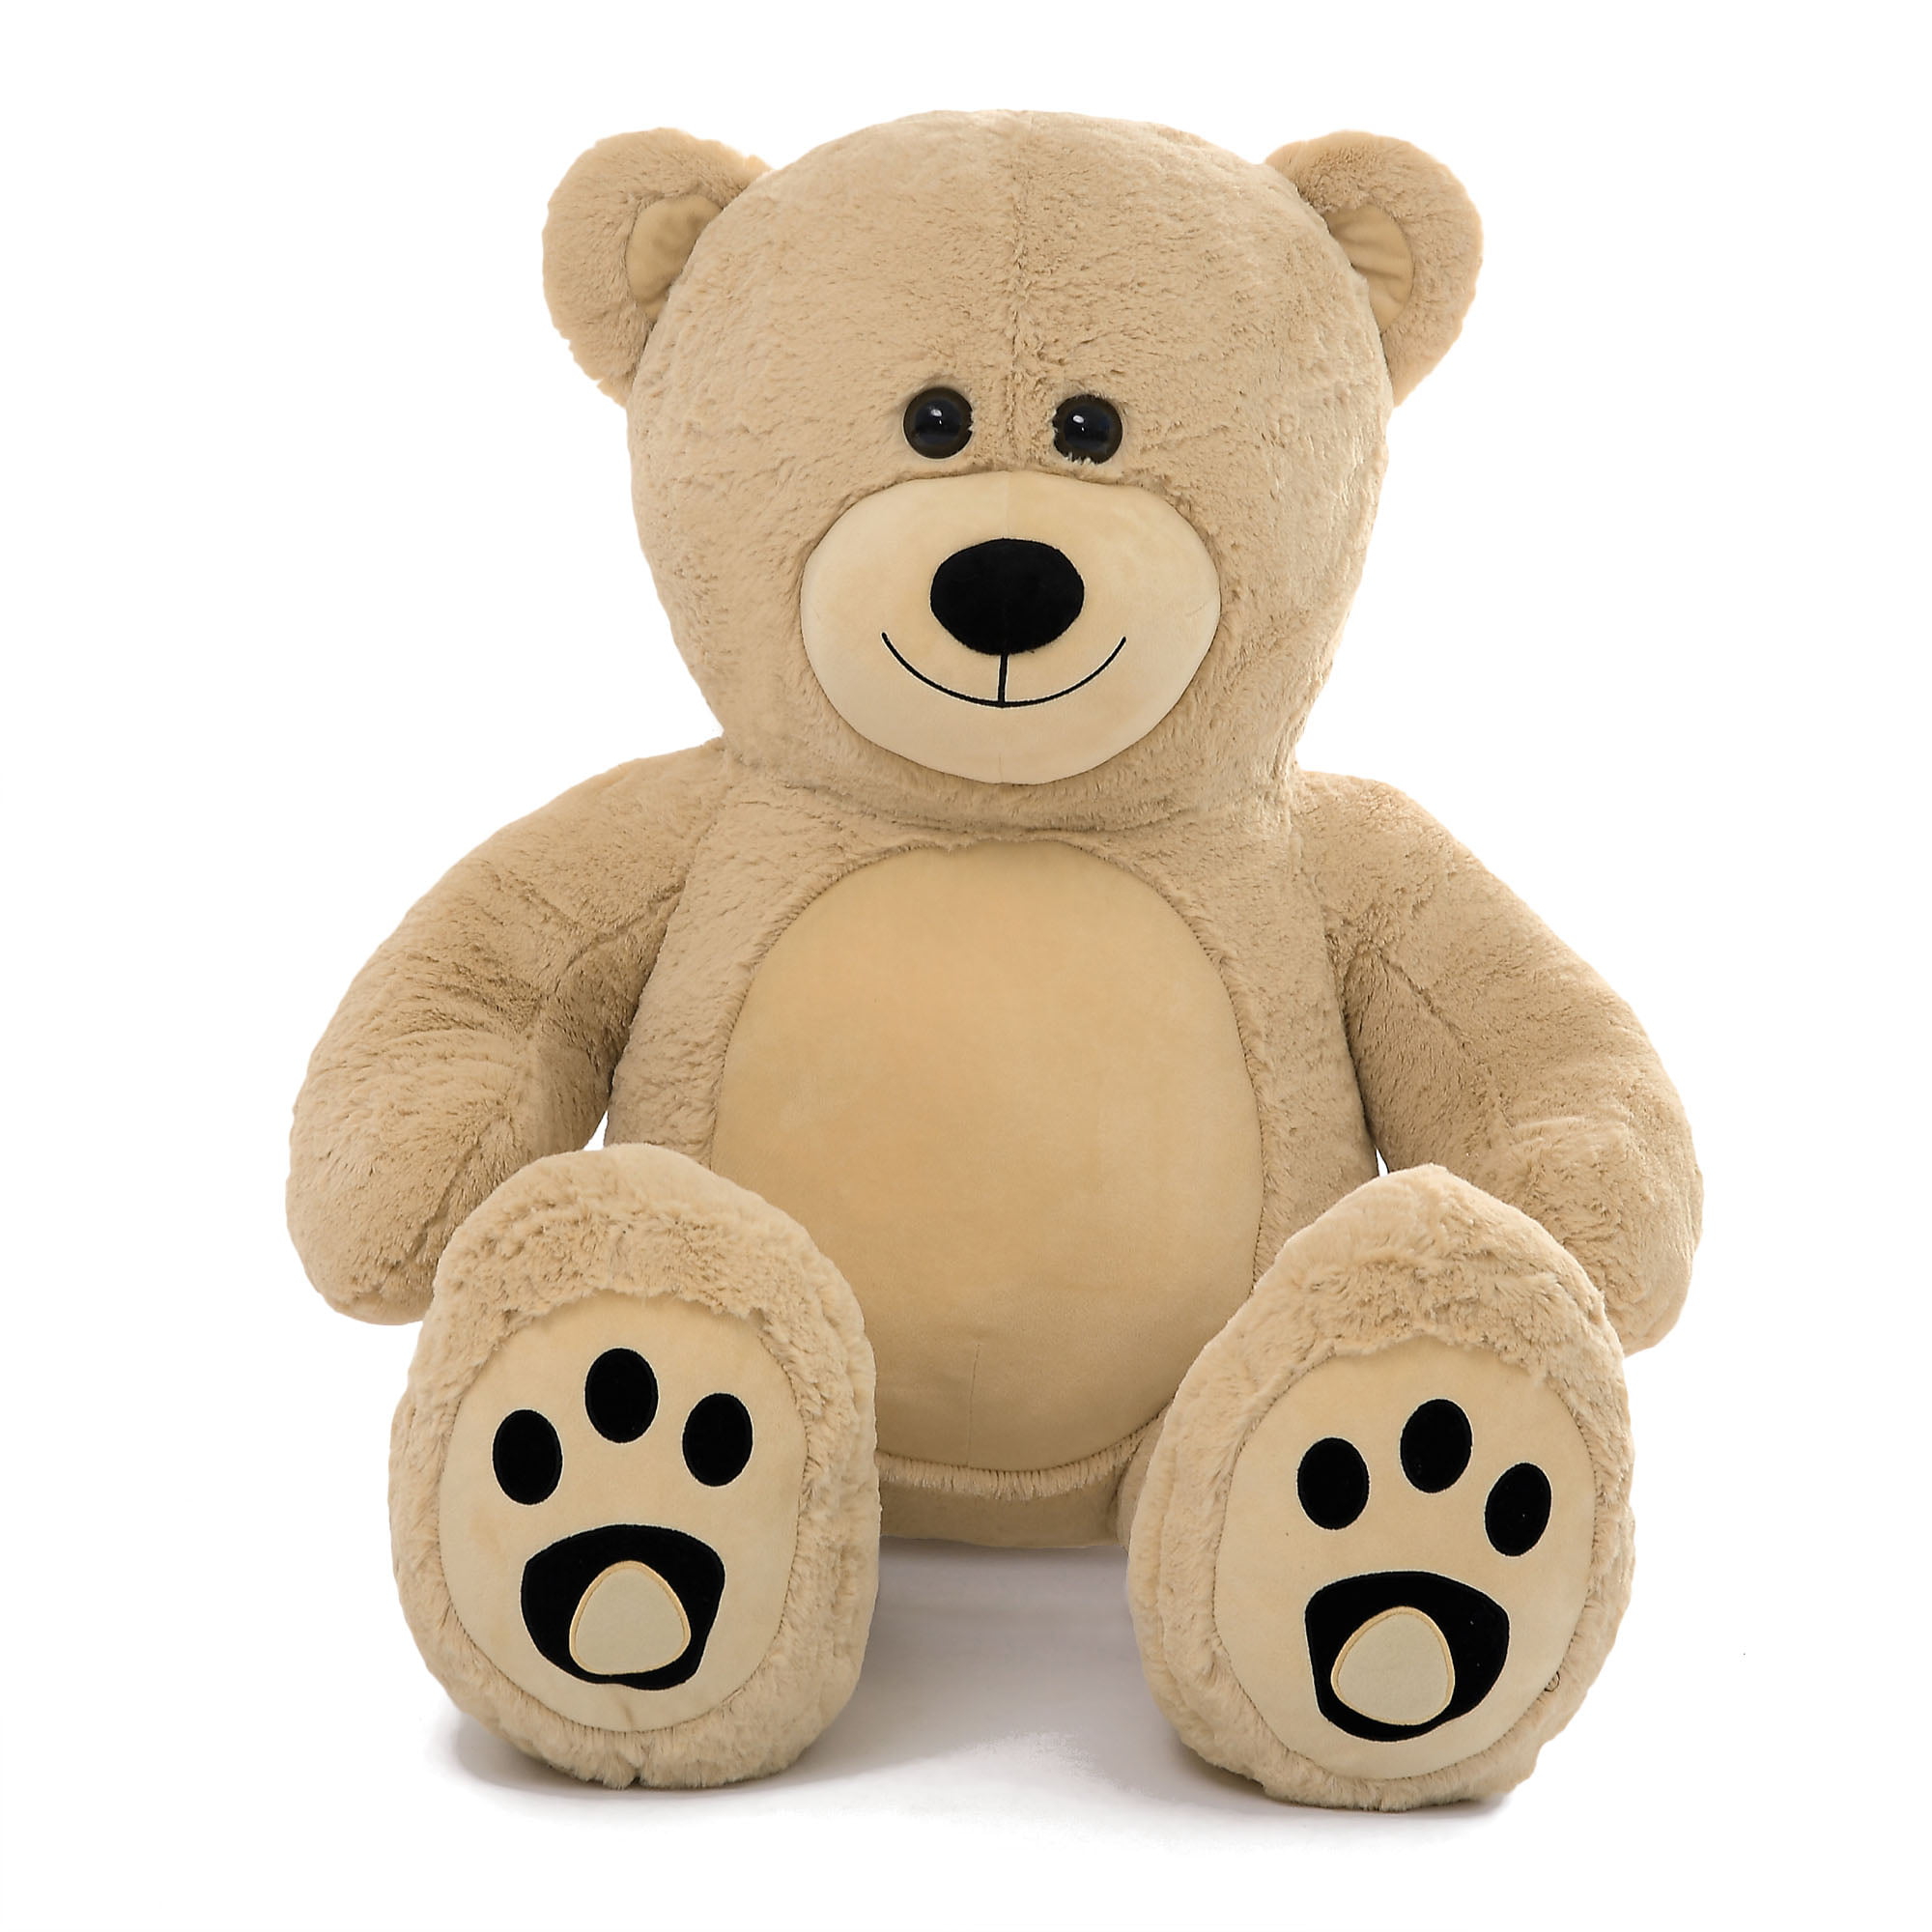 WOWMAX 3 Foot Giant Teddy Bear Danny Cuddly Stuffed Plush 